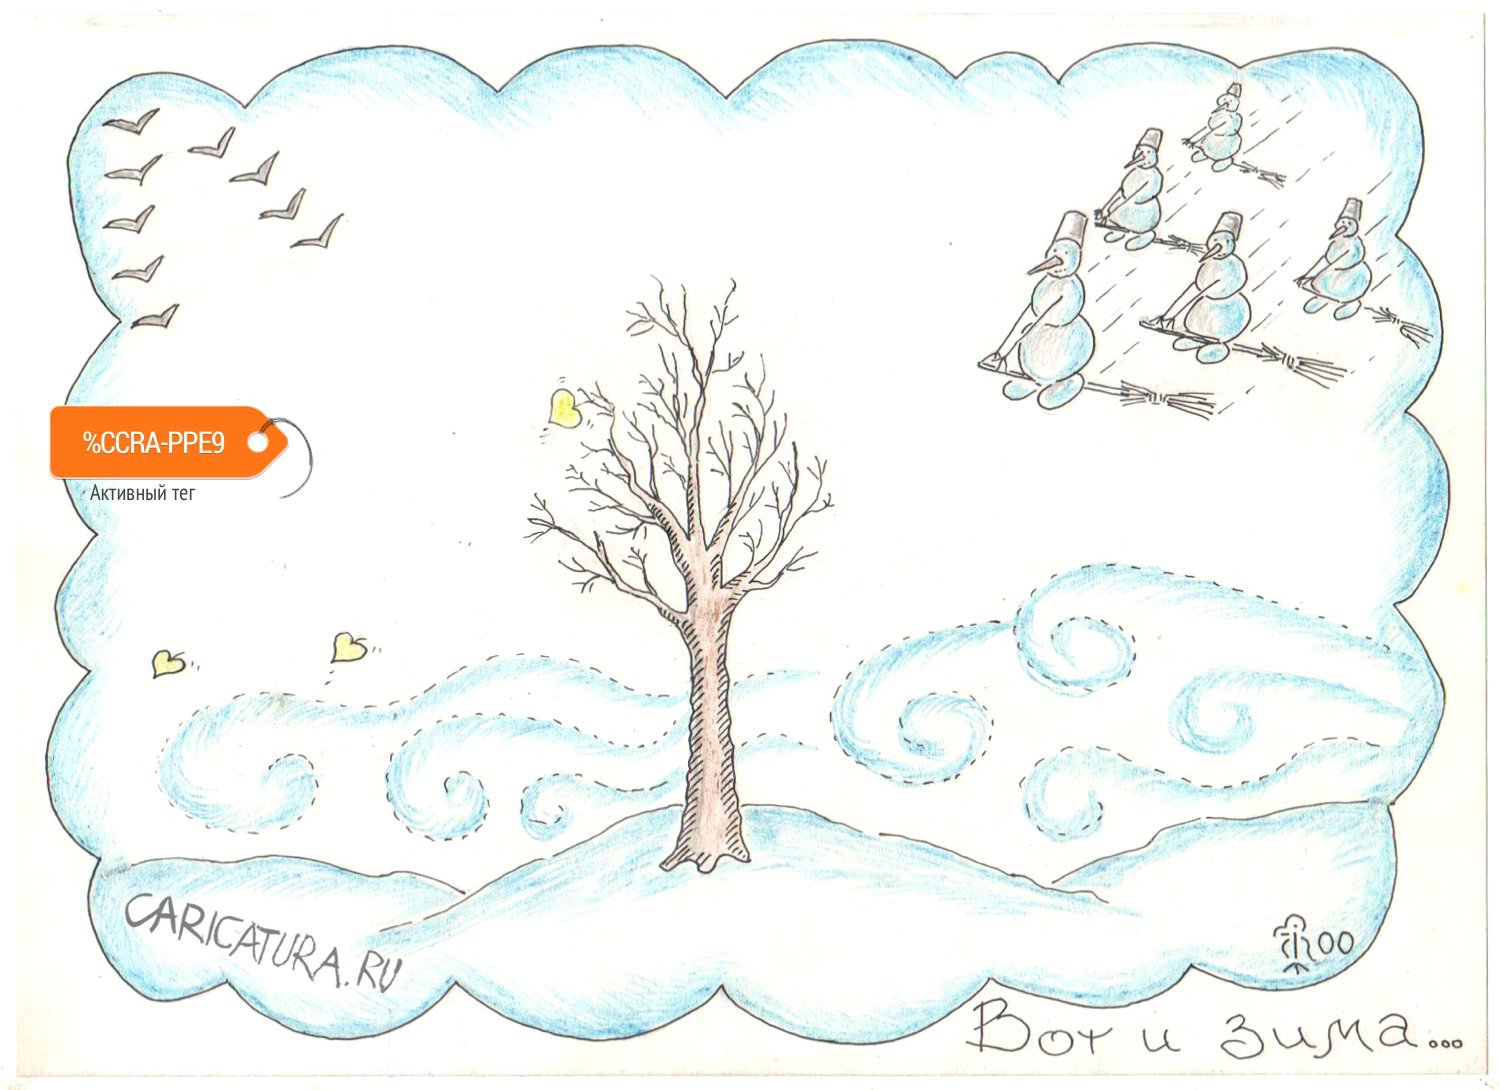 Карикатура "Вот и зима", Вяч Минаев